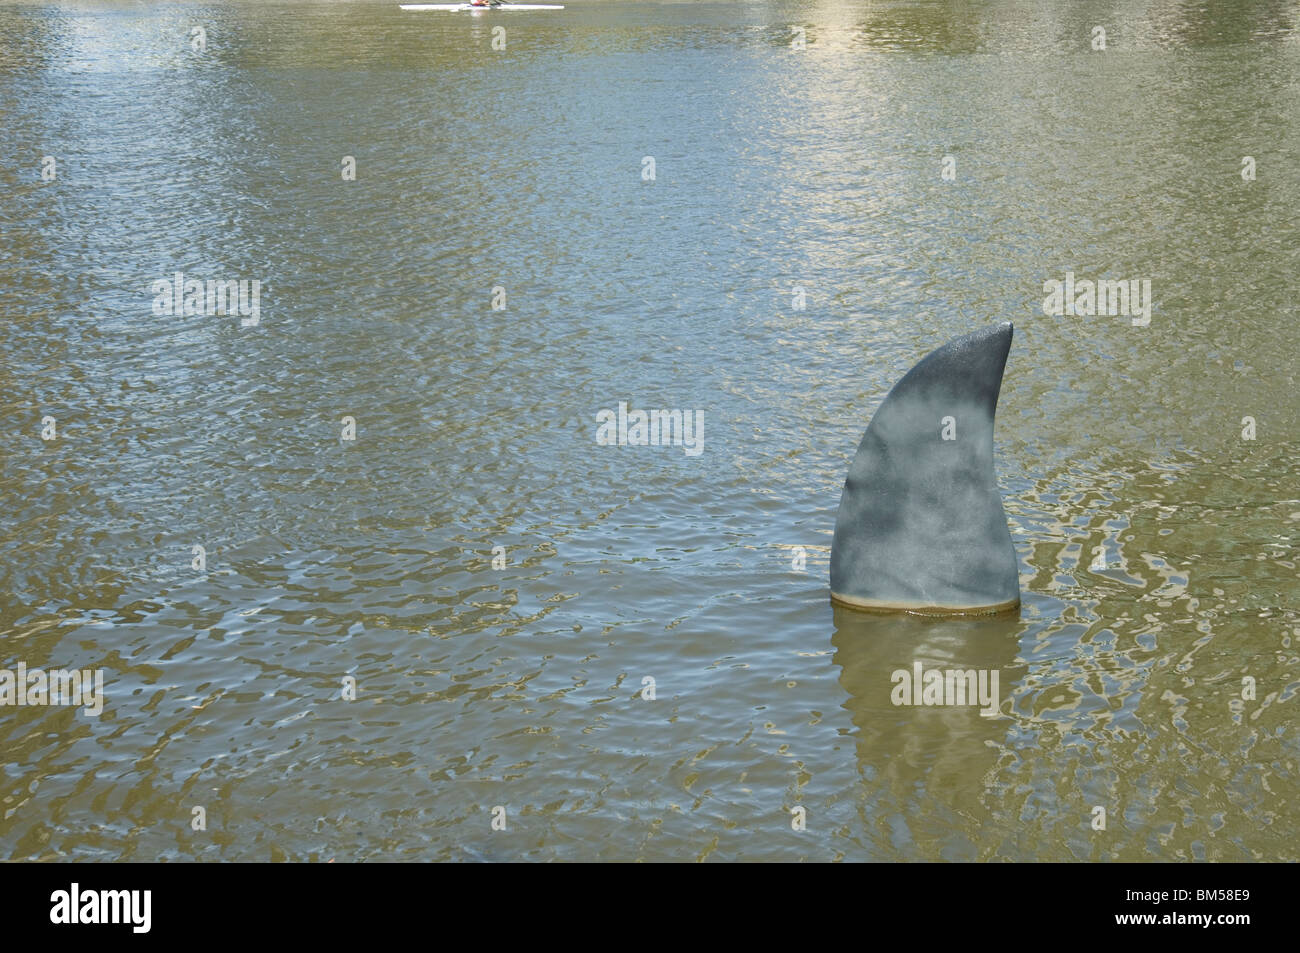 Die großen gefälschte Flosse eines Hais ragt aus der Oberfläche des Yarra River ein Ruderboot geht durch oben Stockfoto